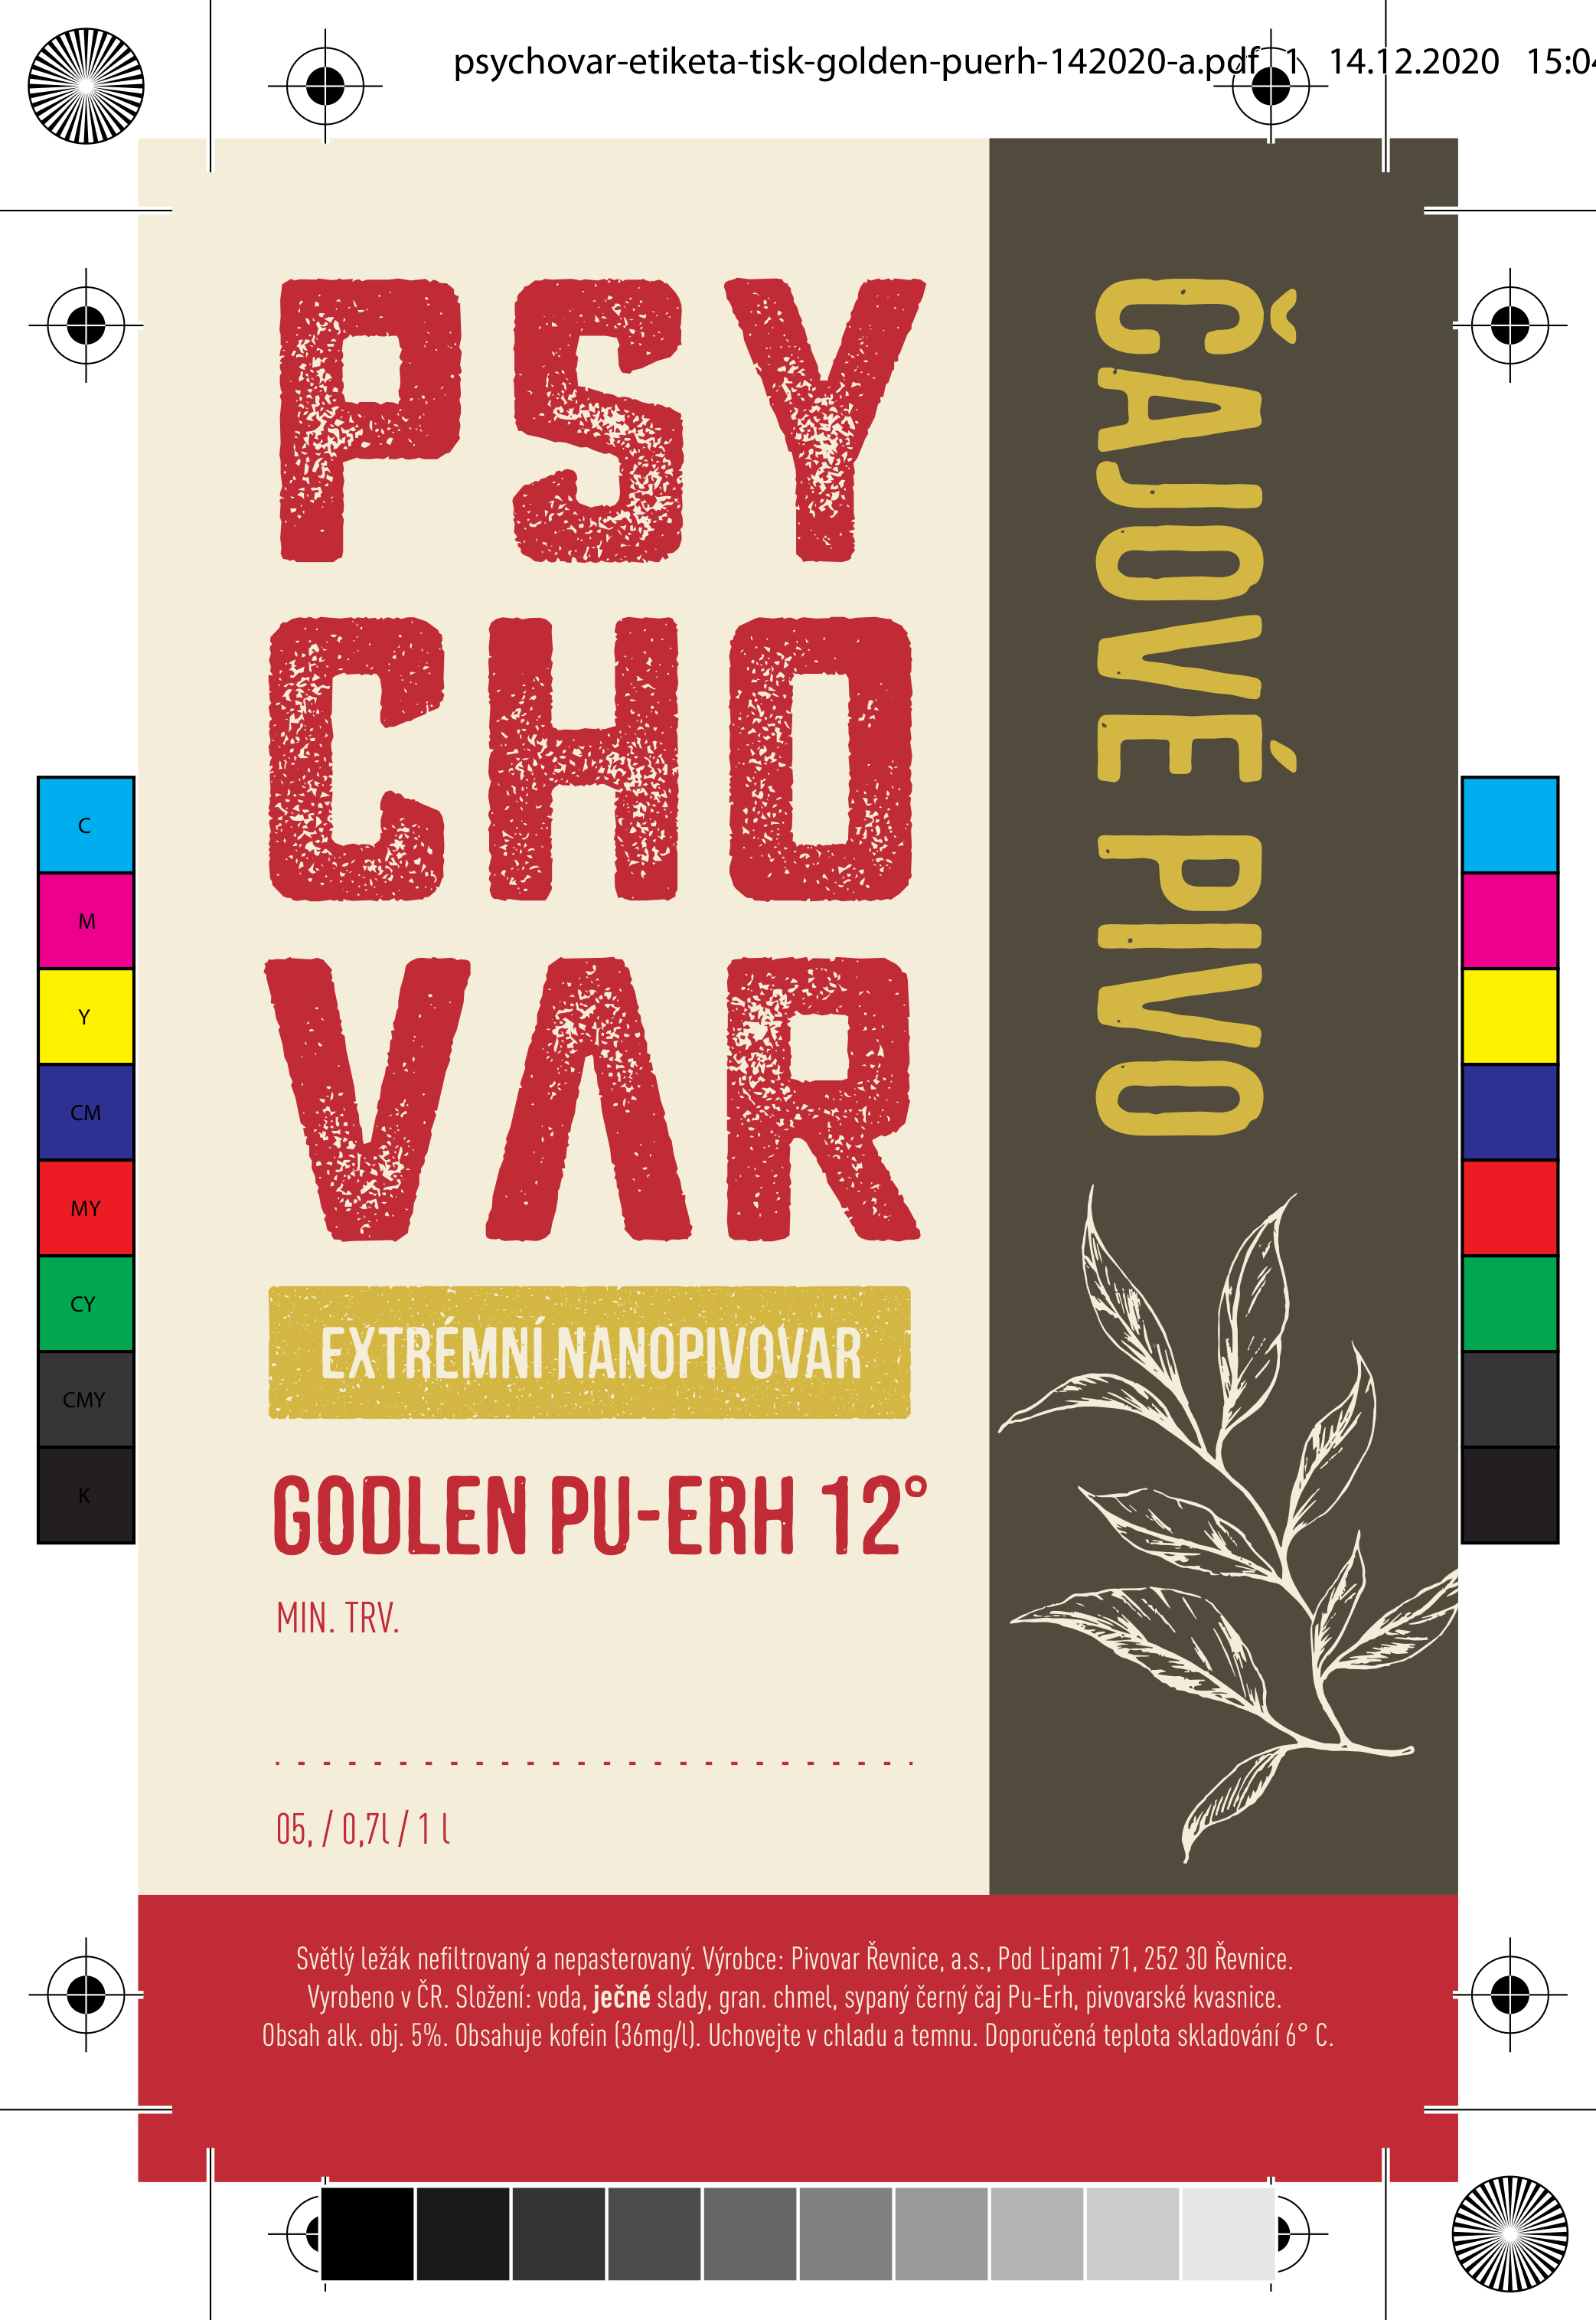 Etiketa piva Golden Pu-Erh od Psychovaru i s tiskovou chybou (vhodná pro sběratelské účely)